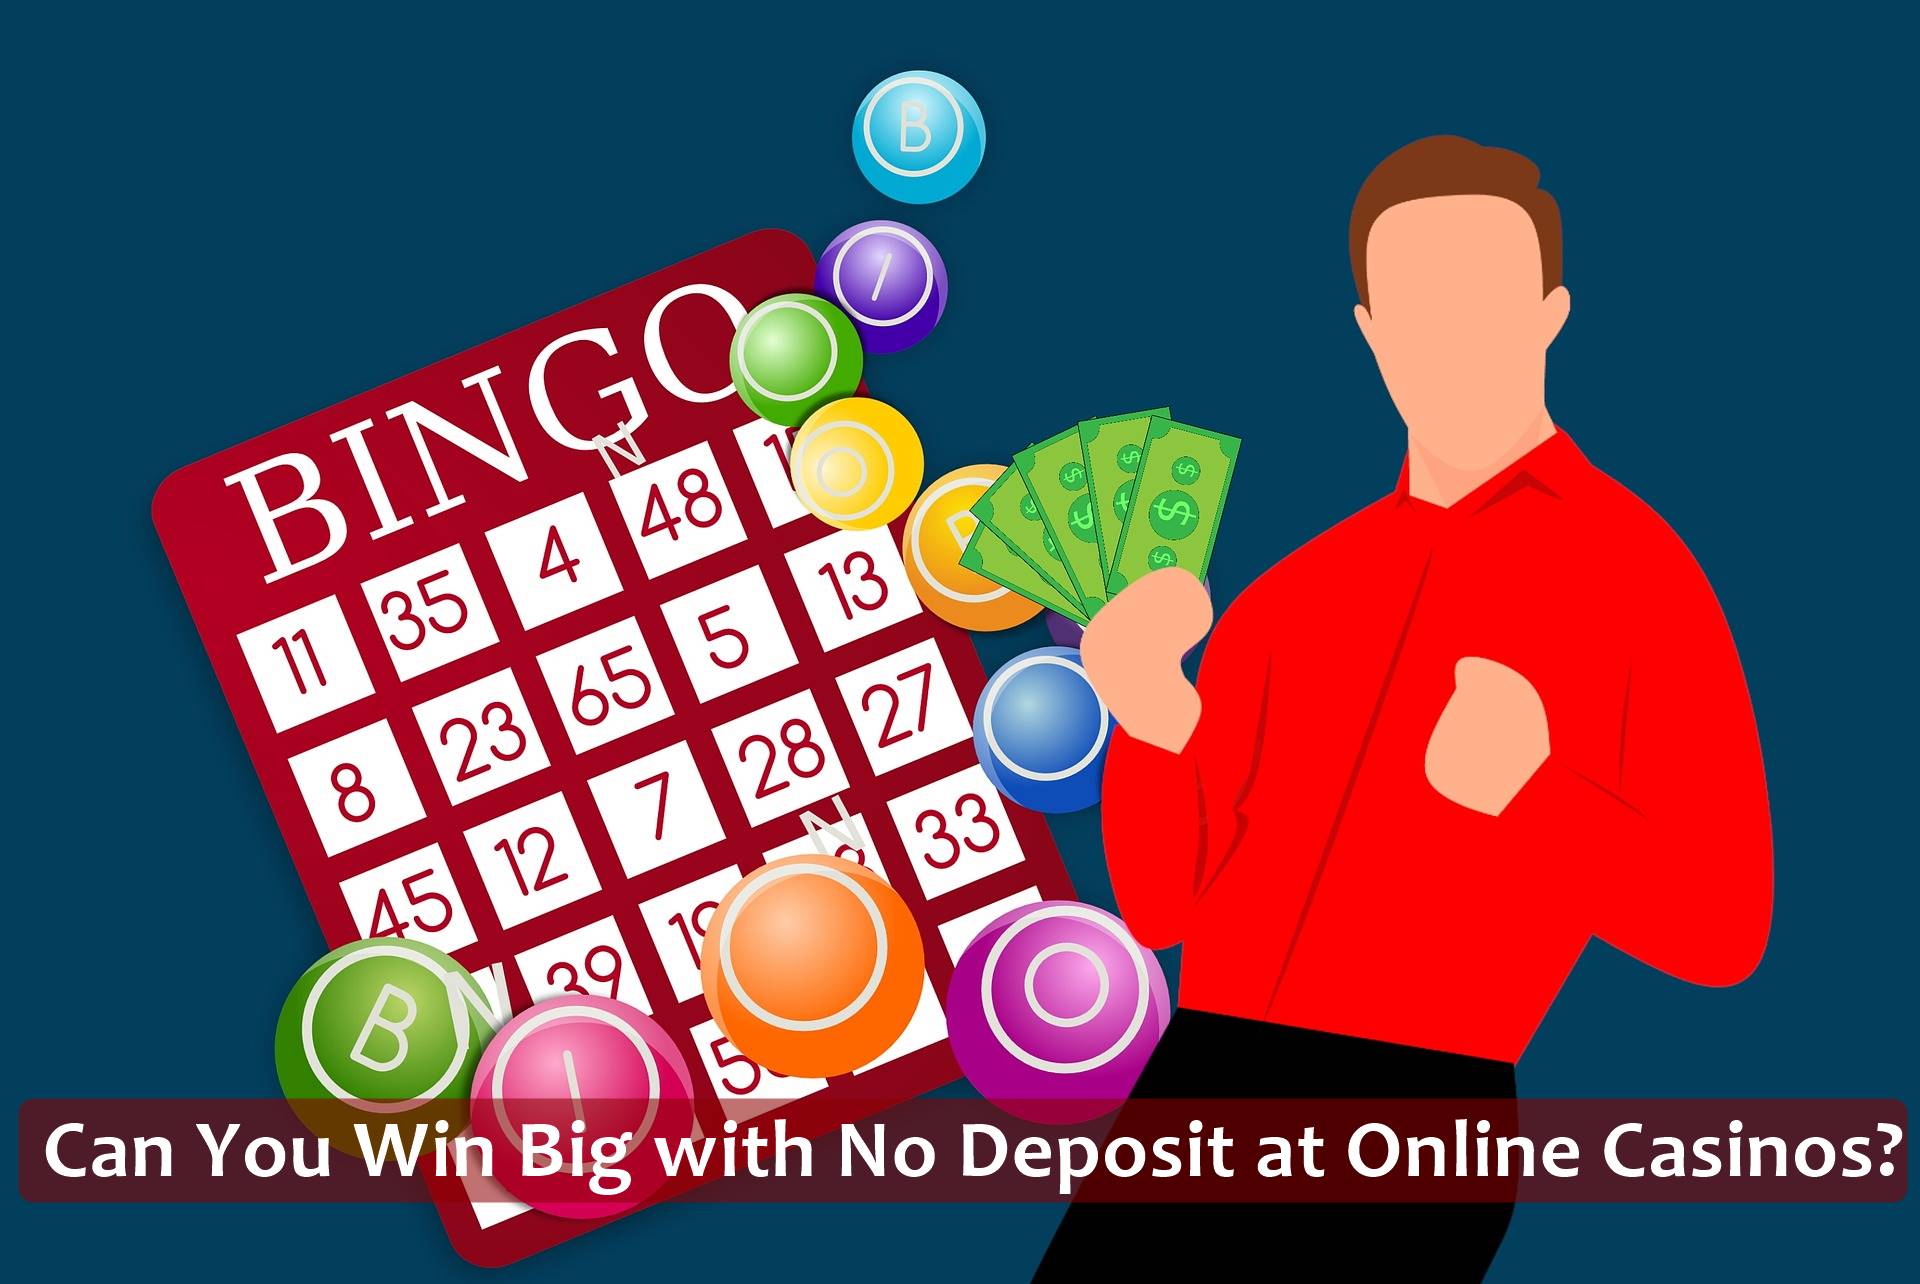 No Deposit at Online Casinos